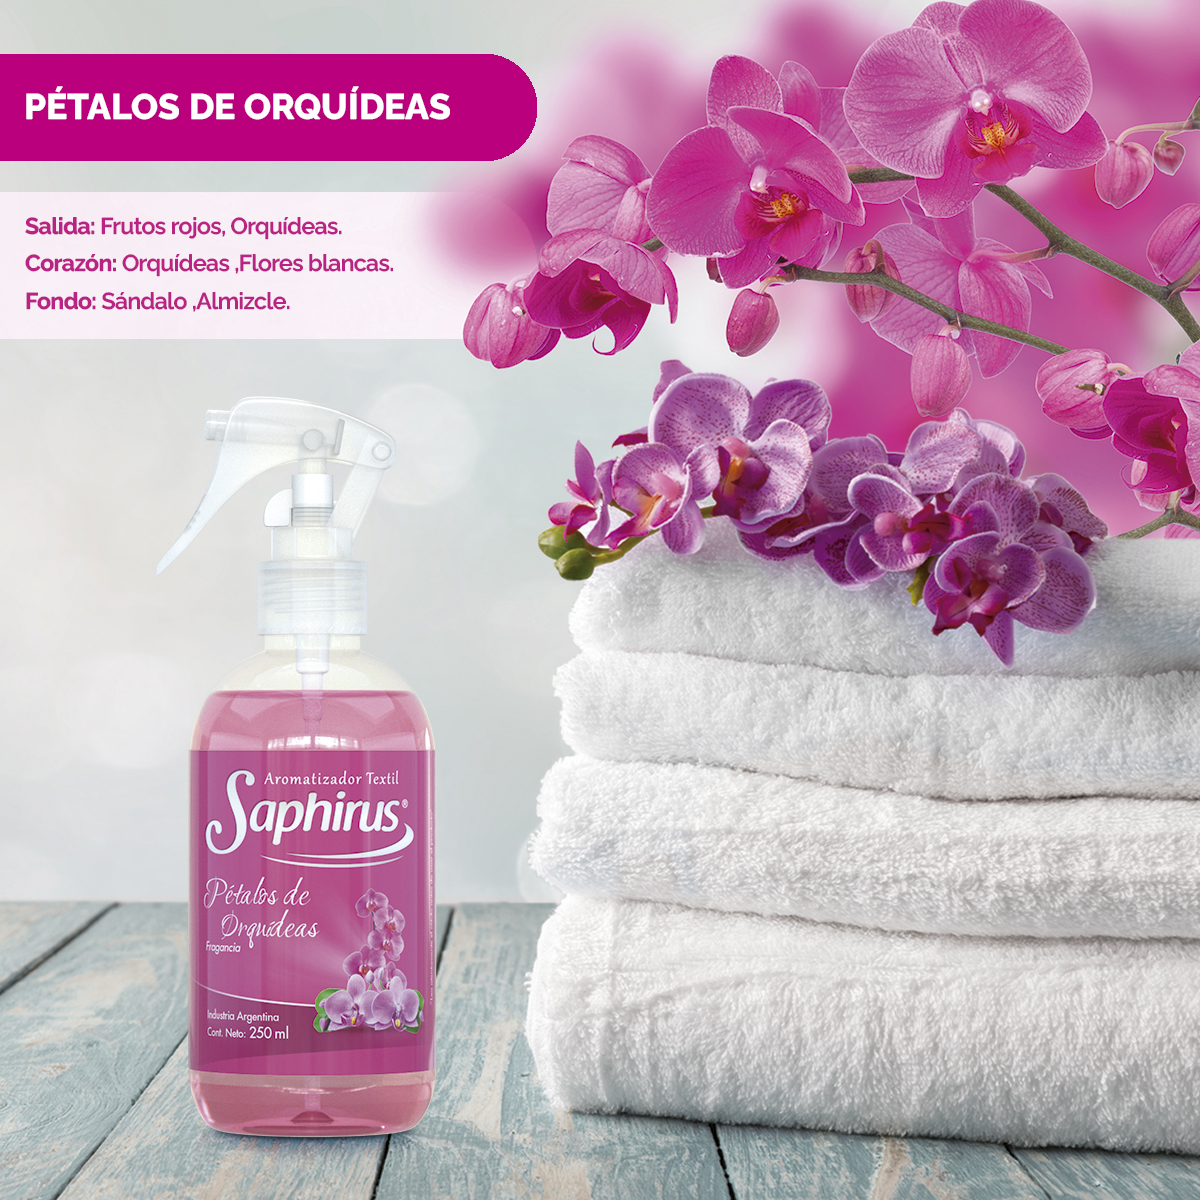 Saphirus Textil Pétalos de Orquídeas Ambientada